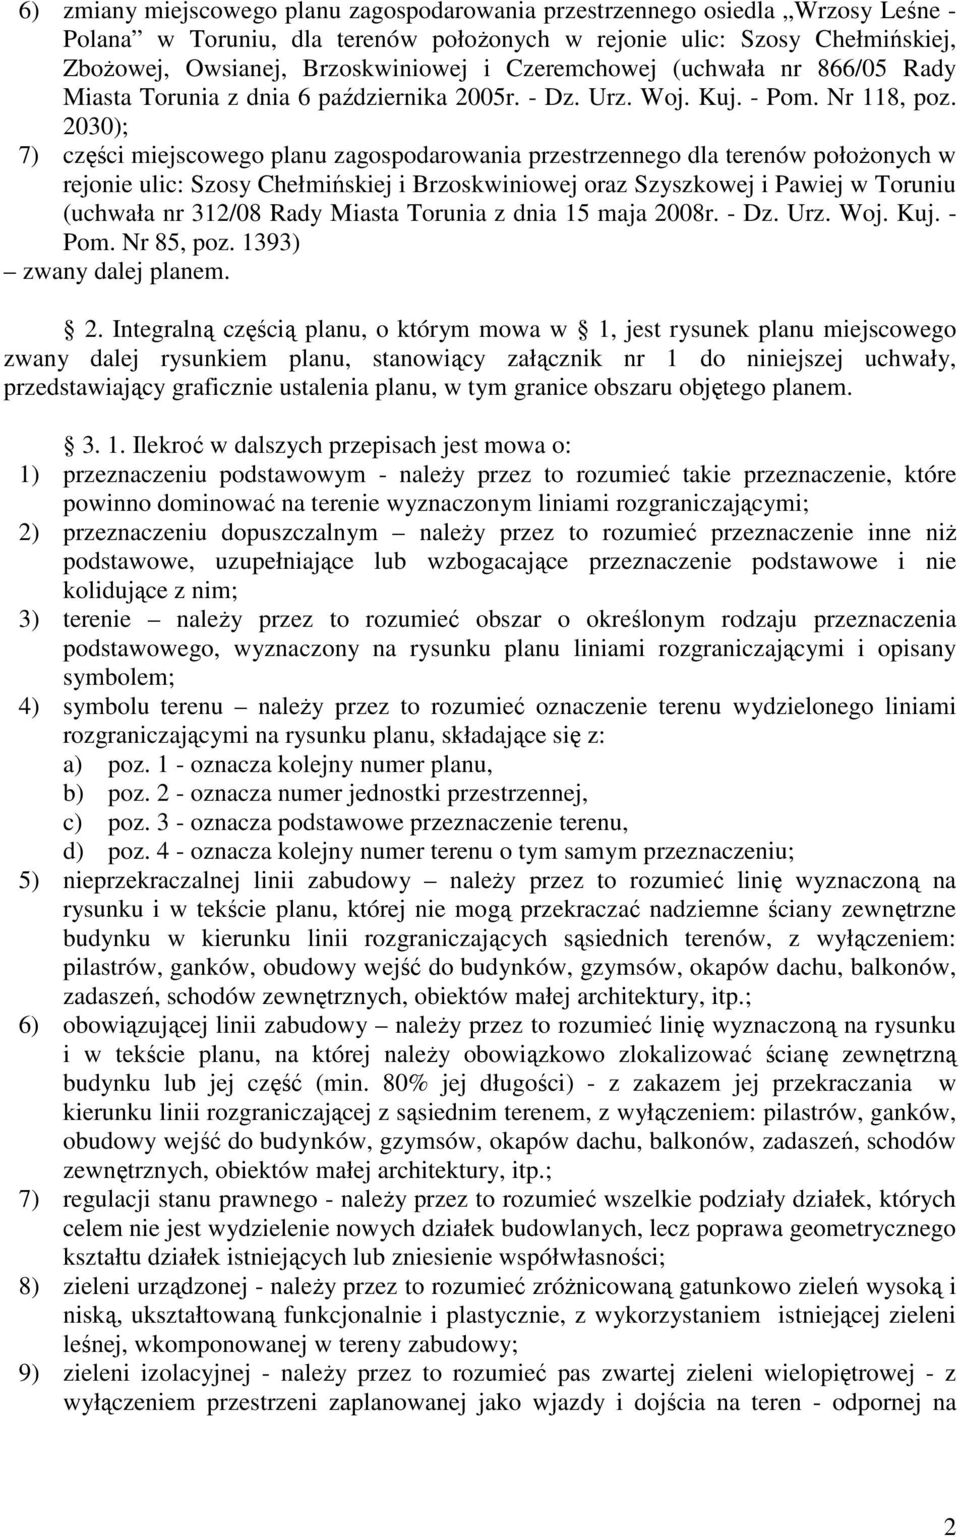 2030); 7) części miejscowego planu zagospodarowania przestrzennego dla terenów położonych w rejonie ulic: Szosy Chełmińskiej i Brzoskwiniowej oraz Szyszkowej i Pawiej w Toruniu (uchwała nr 312/08